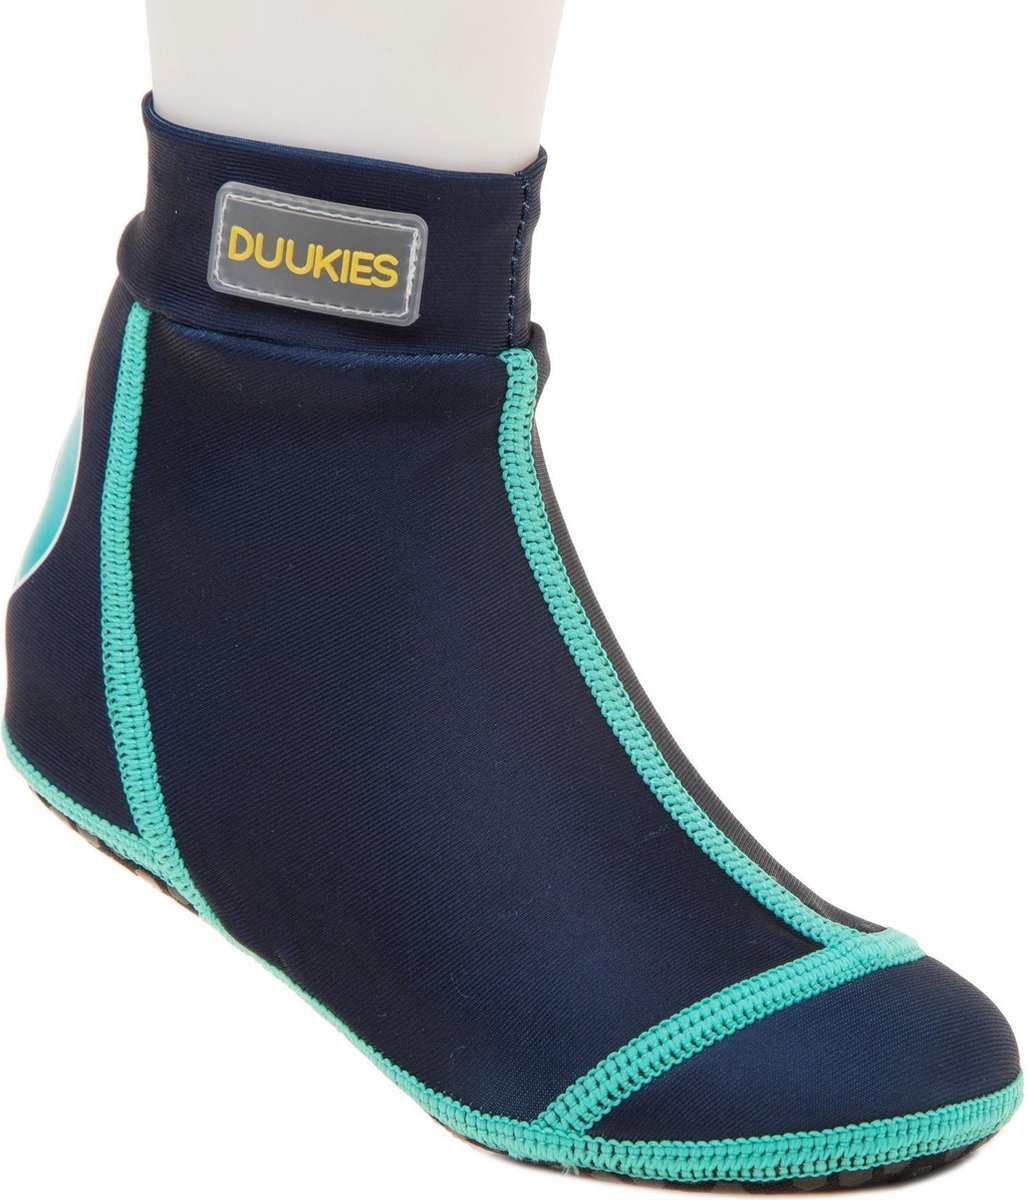 Duukies - Jongens UV-strandsokken - Blue/Green - Donkerblauw - maat 30-31EU